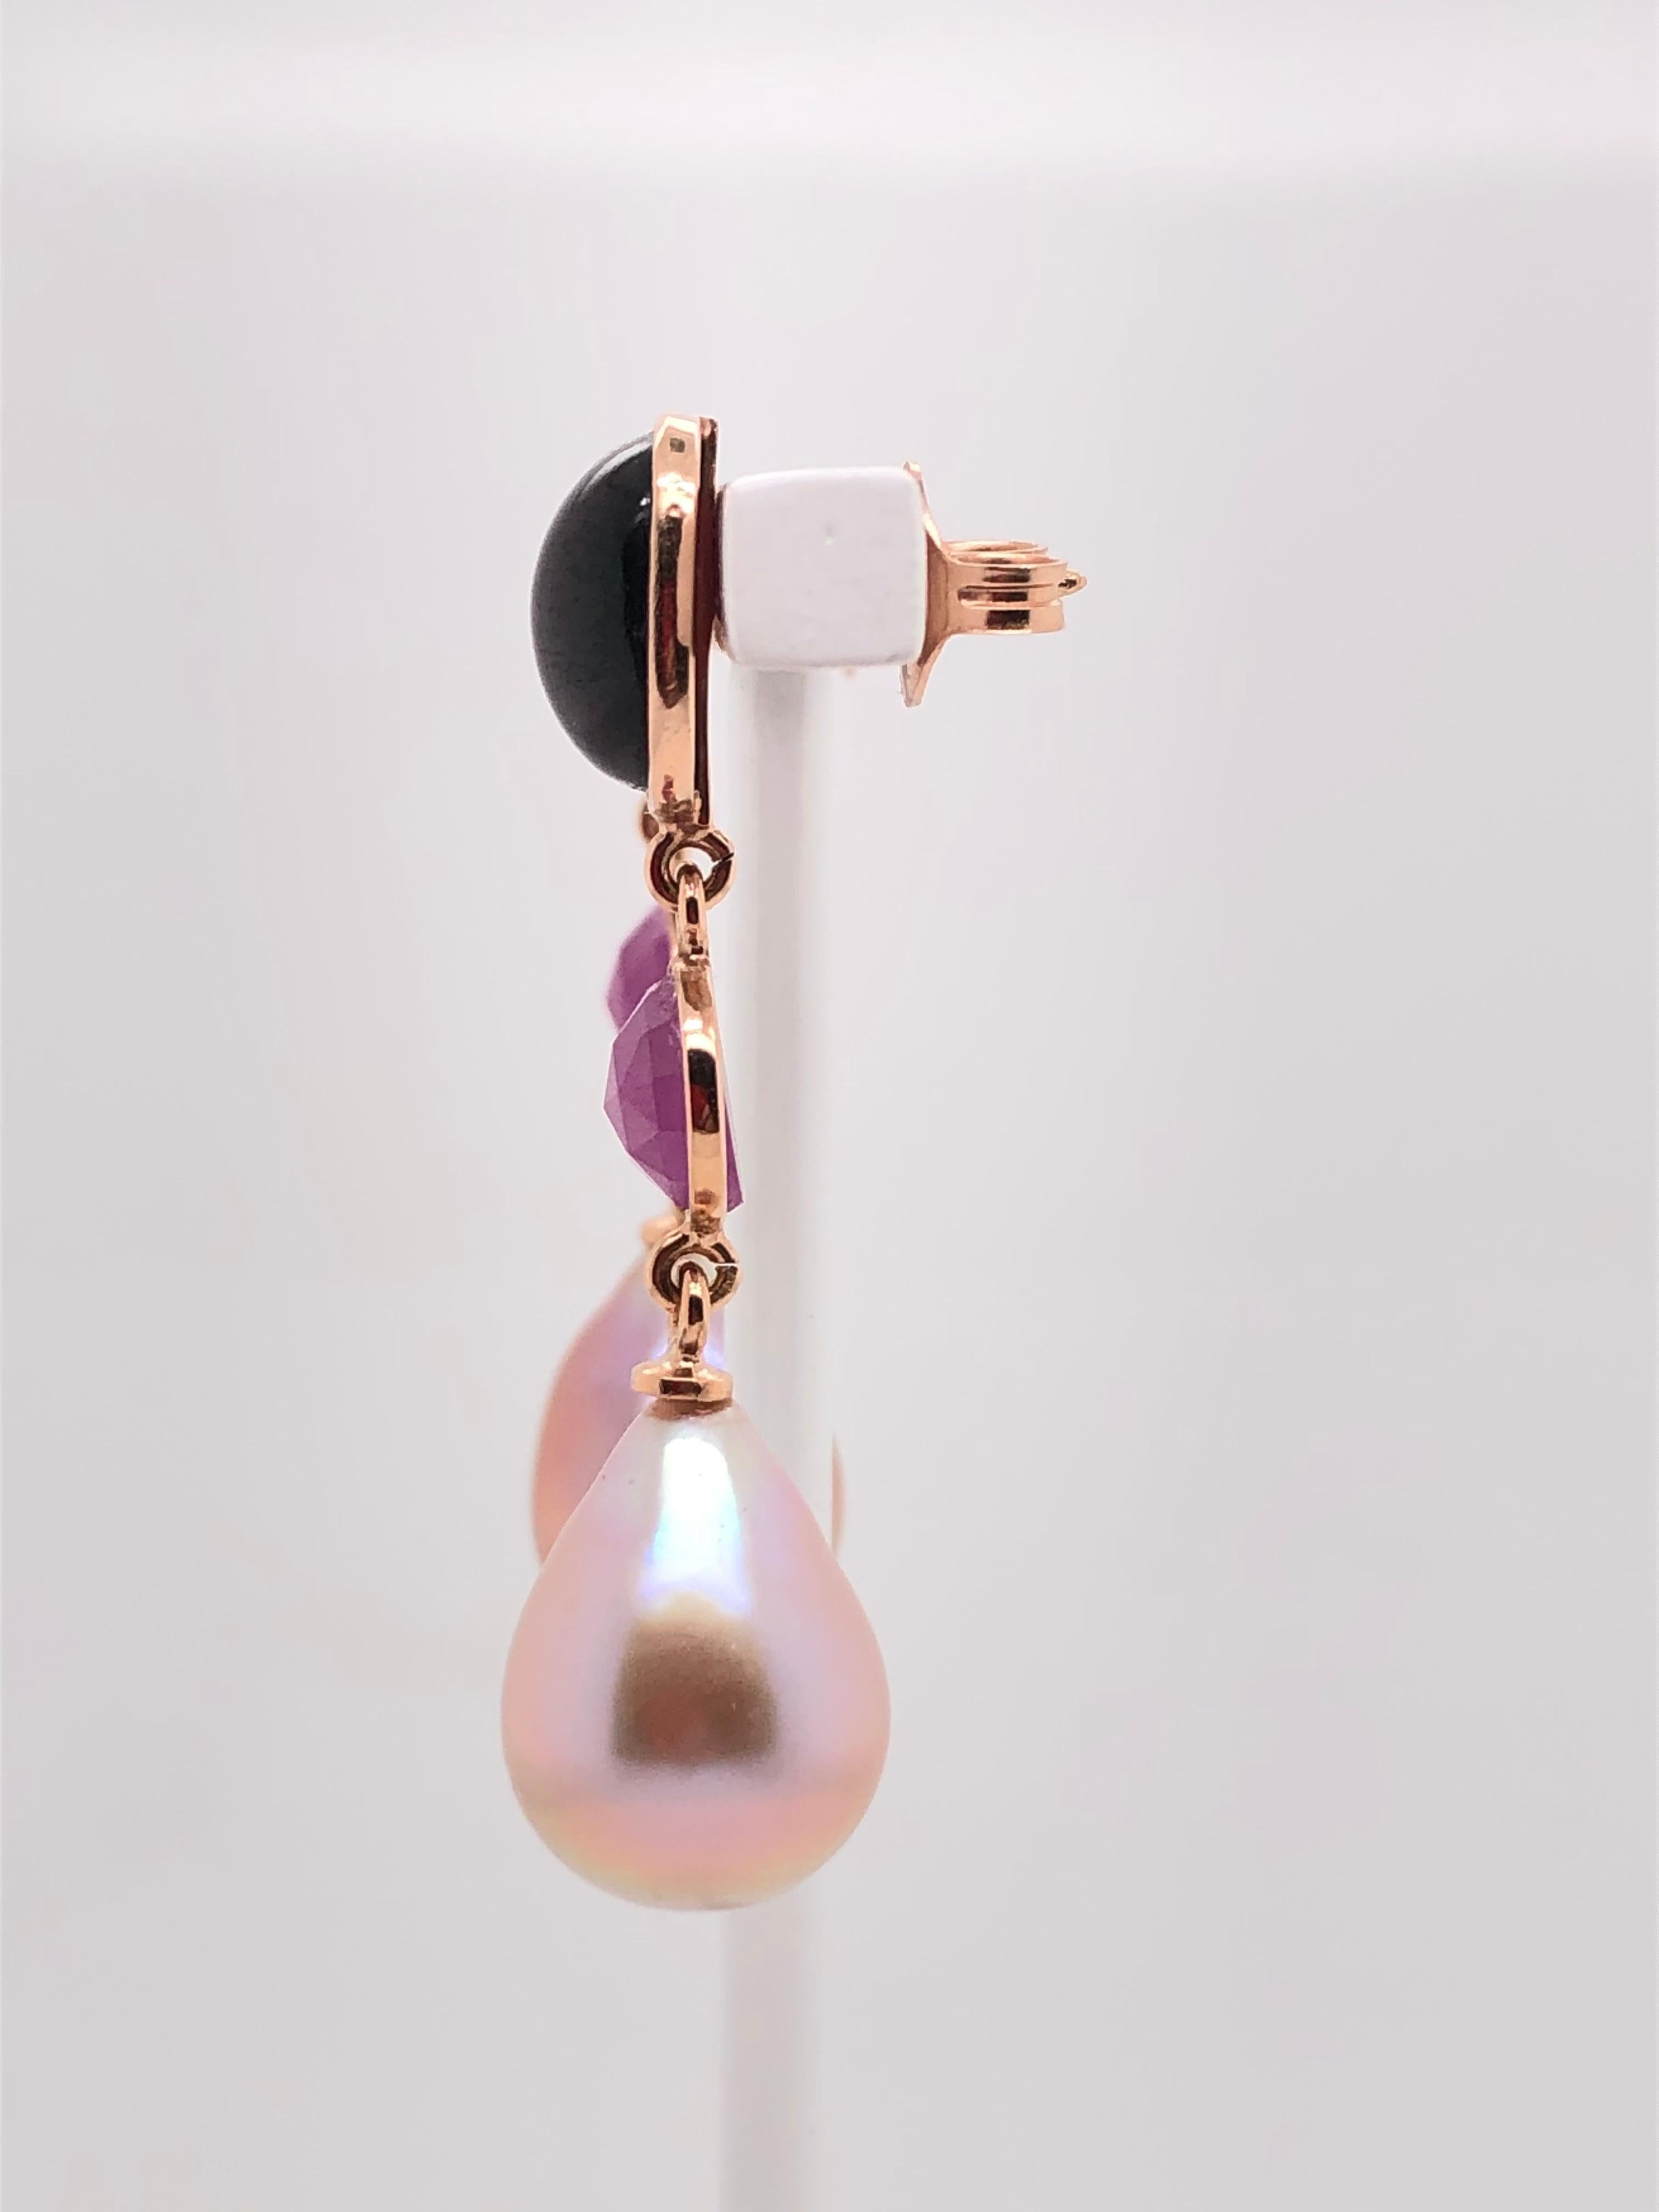 Garnet Rubies with Pearls on Rose Gold 18 K Chandelier Earrings
2 Garnet
2 Rubies
2 South Sea Pearls 
Weight Of Gold : 3.5 grams 

